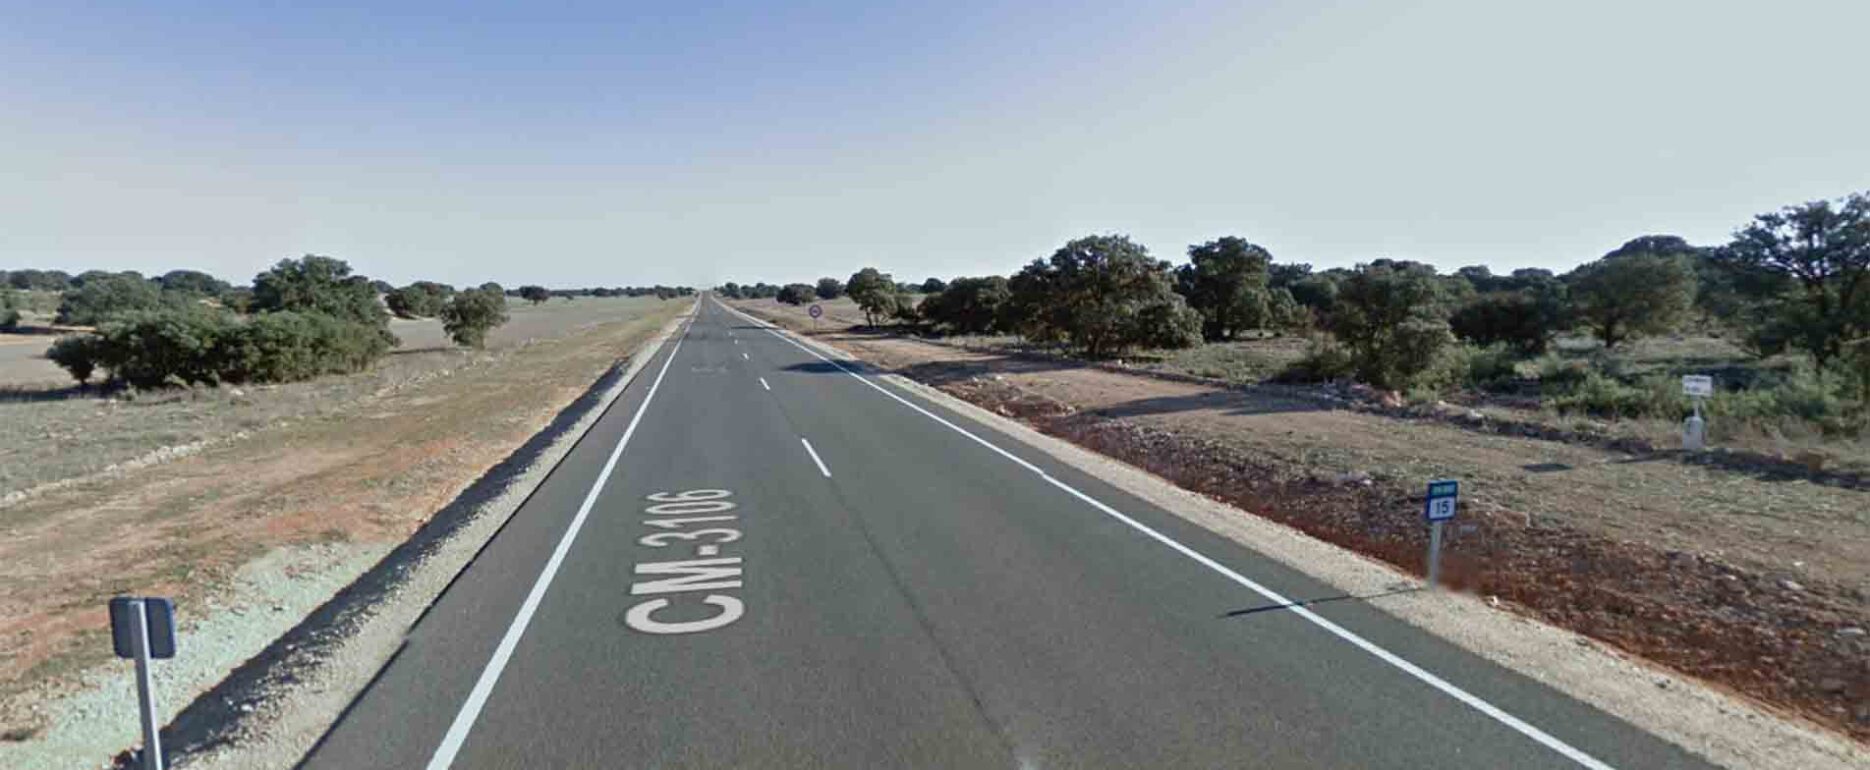 Punto kilométrico 15 de la CM-3106, entre La Roda y Munera. Cerca del lugar donde se ha producido el accidente mortal de La Roda Foto: Google Maps.